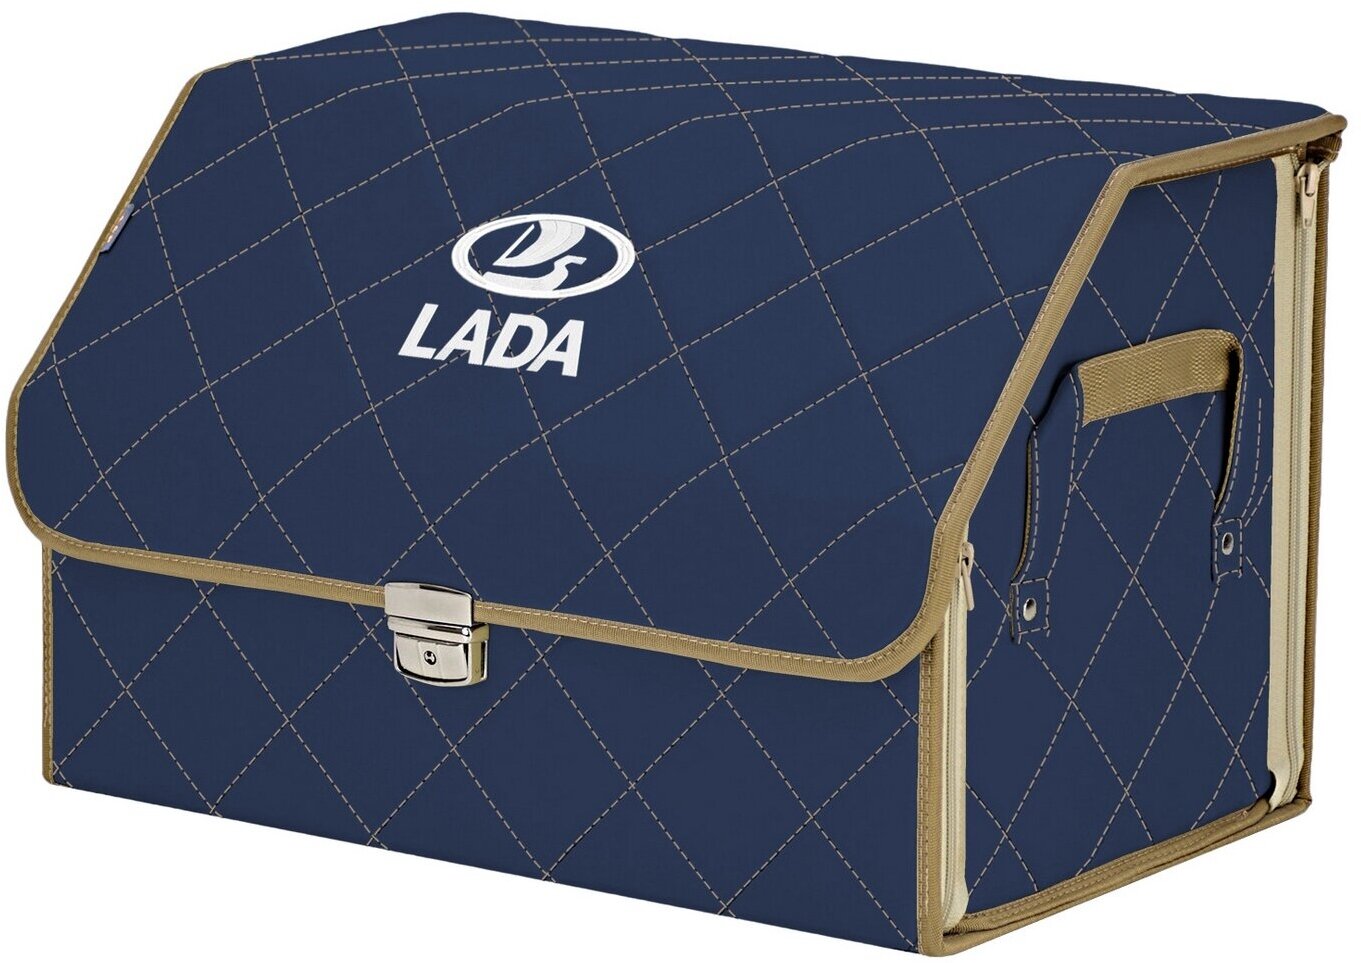 Органайзер-саквояж в багажник "Союз Премиум" (размер L). Цвет: синий с бежевой прострочкой Ромб и вышивкой LADA (лада).